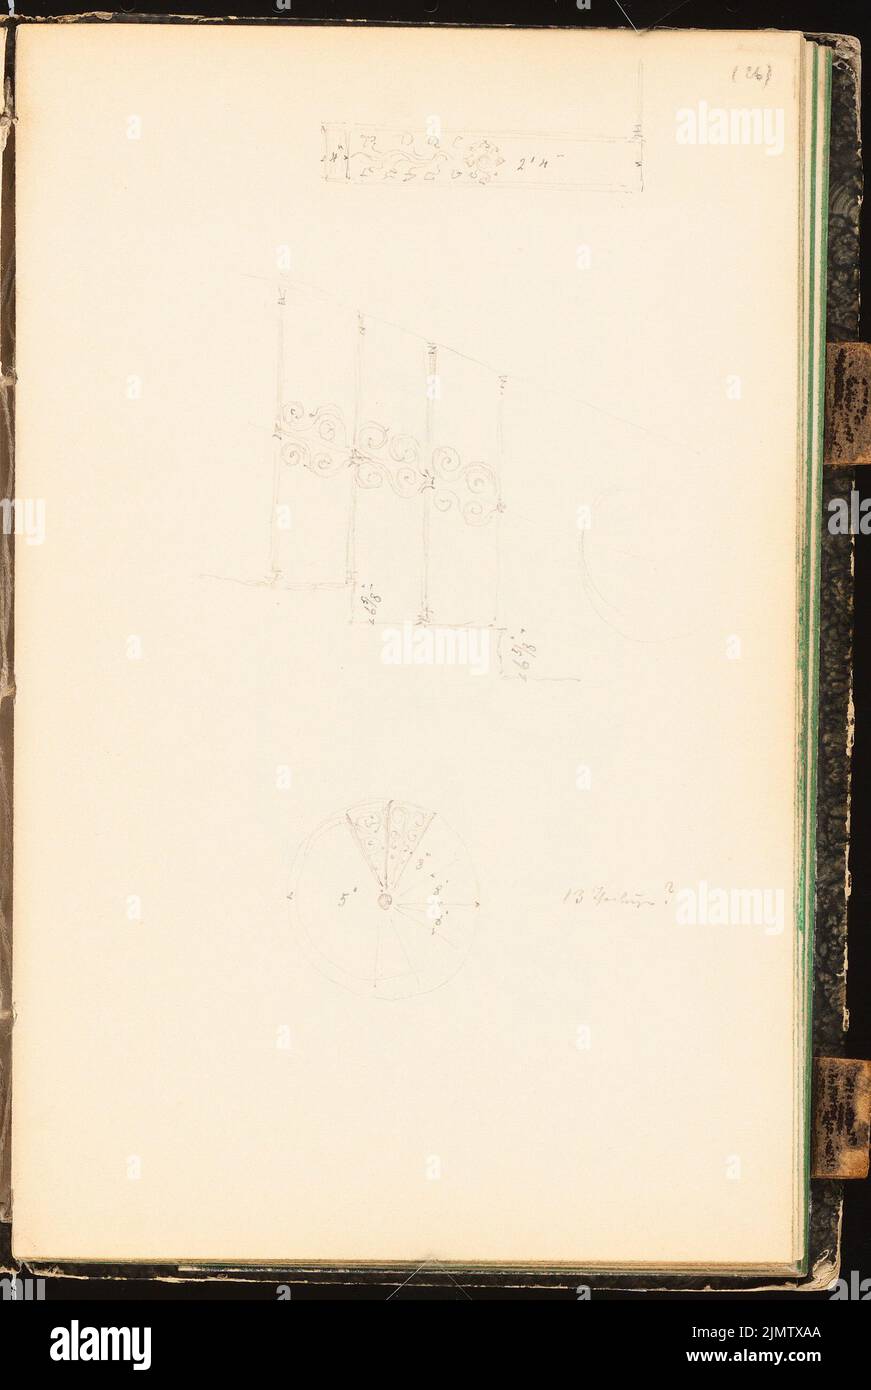 Scheppig Carl (1803-1885), sketchbook: stair railing (1830-1830): Views, details. Pencil on paper, 20.6 x 13.8 cm (including scan edges) Scheppig Carl  (1803-1885): Skizzenbuch: Treppengeländer Stock Photo